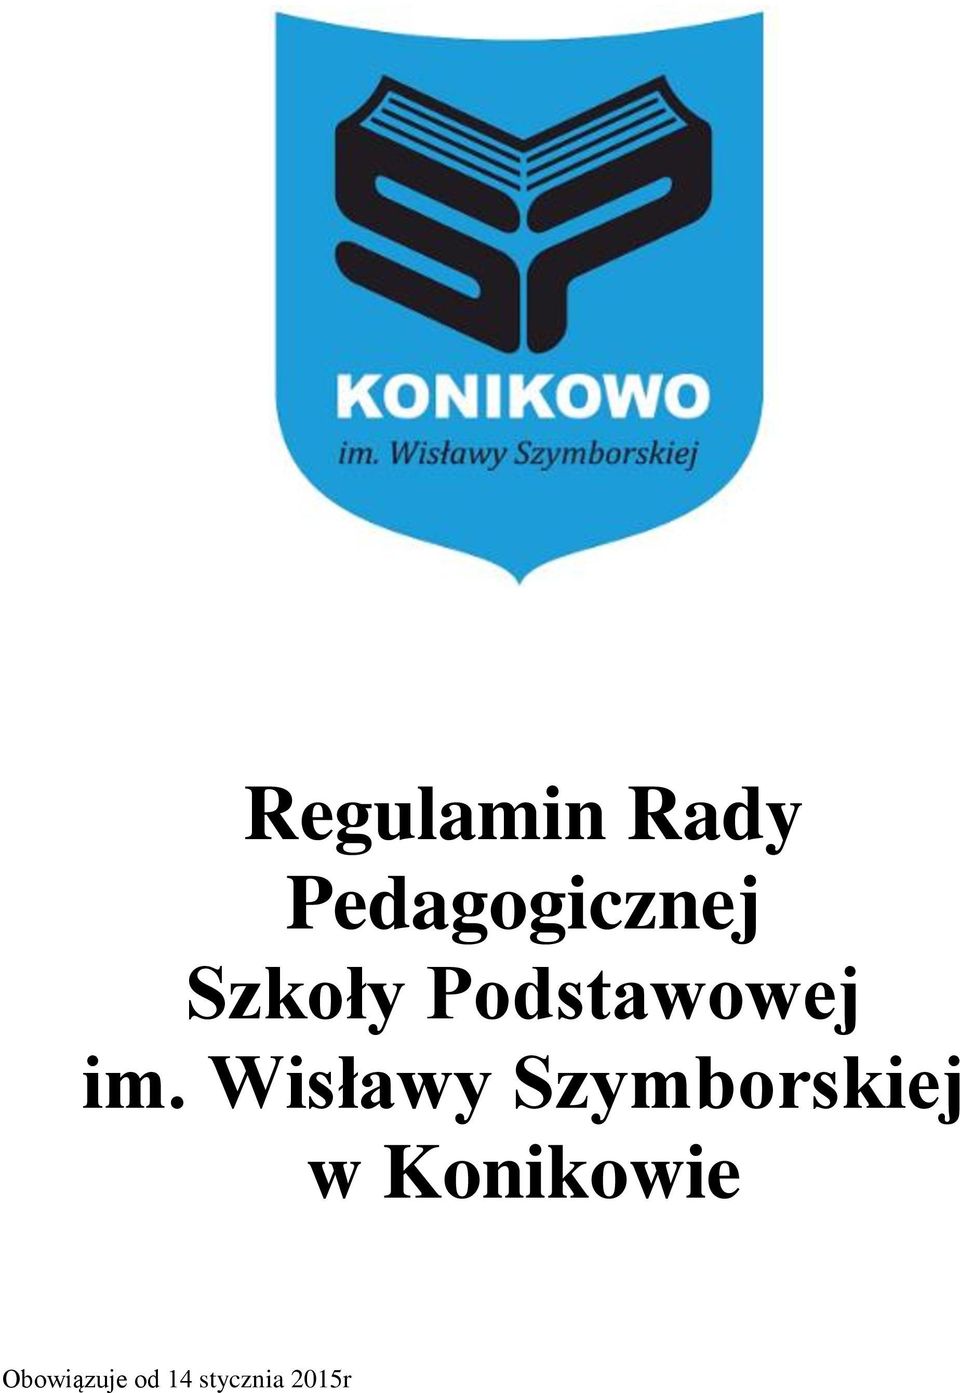 Wisławy Szymborskiej w